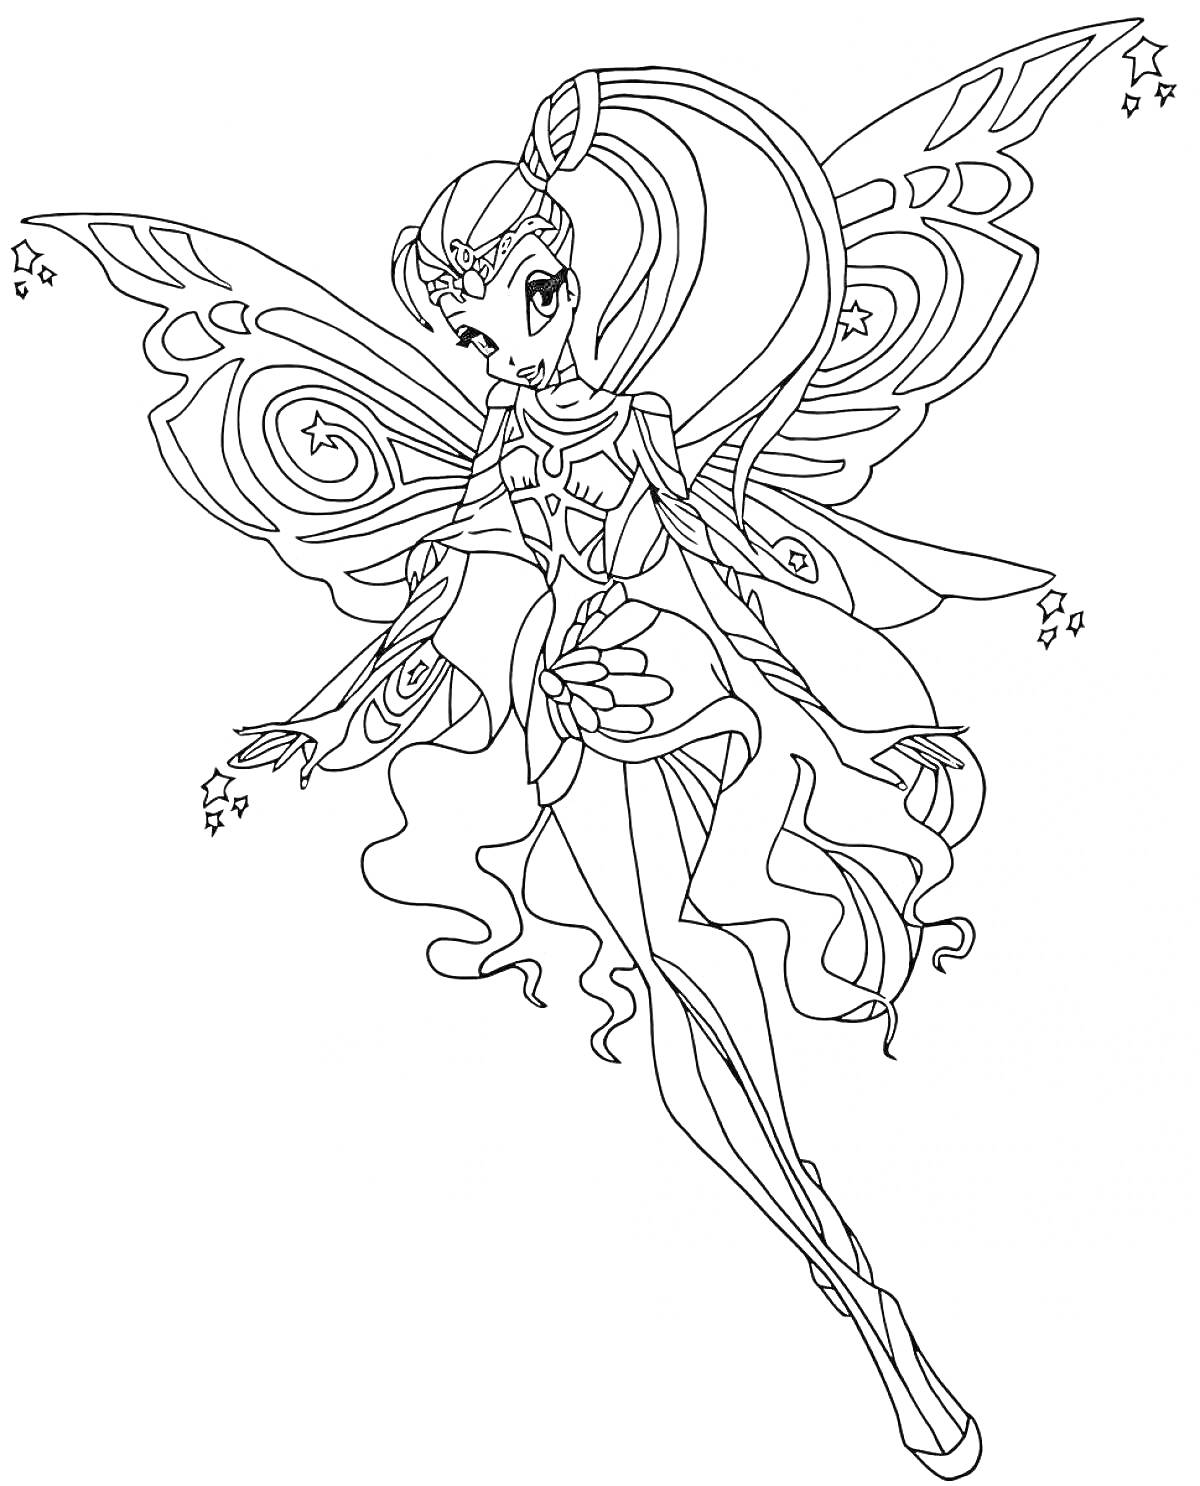 Раскраска Фея Винкс с крыльями, в платье с узорами, с длинными волосами и магическими элементами